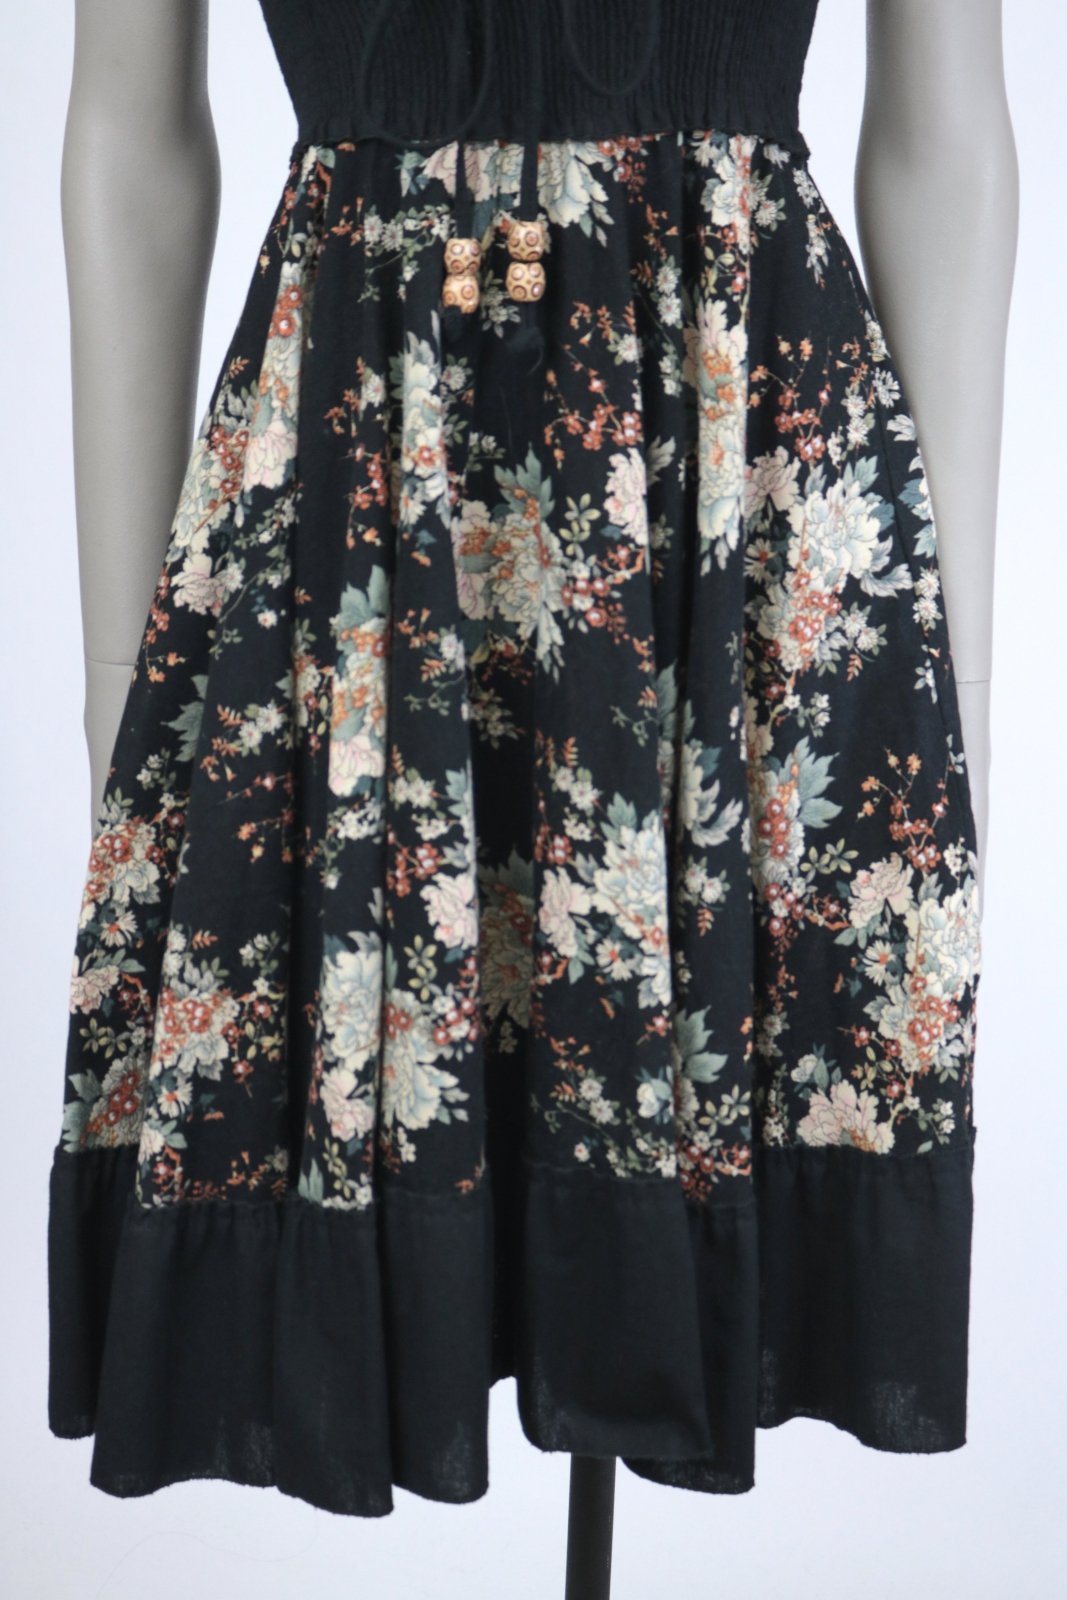 1970s Dark Floral Smocked Strapless Dress - Floria Vintage